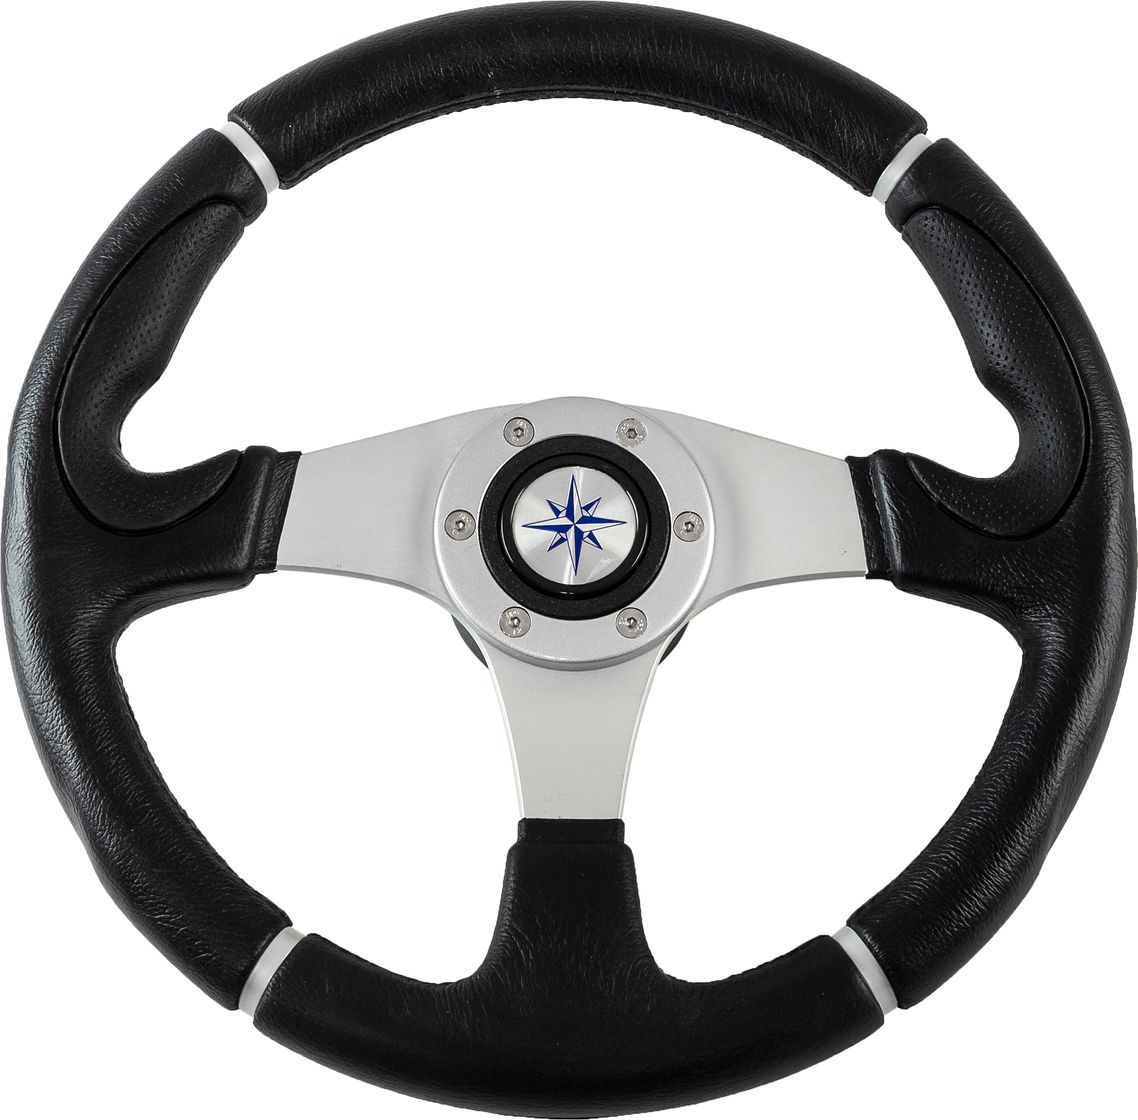 Рулевое колесо ORION обод черный, спицы серебряные д. 355 мм VN960101-01 рулевое колесо orion обод спицы серебряные д 355 мм vn960101 01